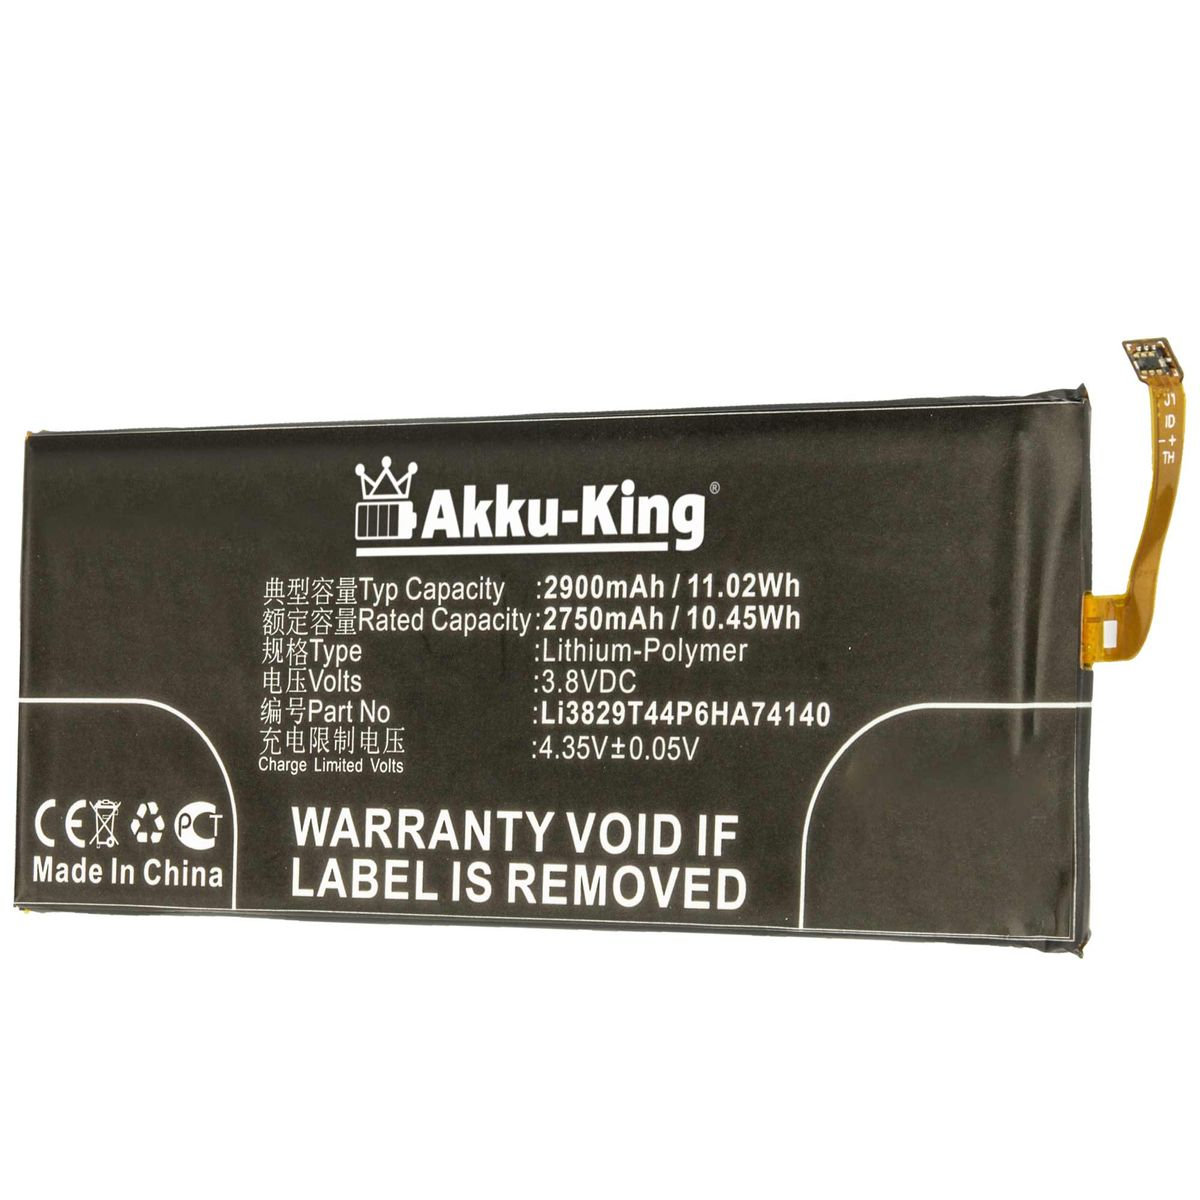 AKKU-KING Akku kompatibel 2900mAh Handy-Akku, Li-Polymer Volt, mit 3.8 Li3829T44P6HA74140 ZTE